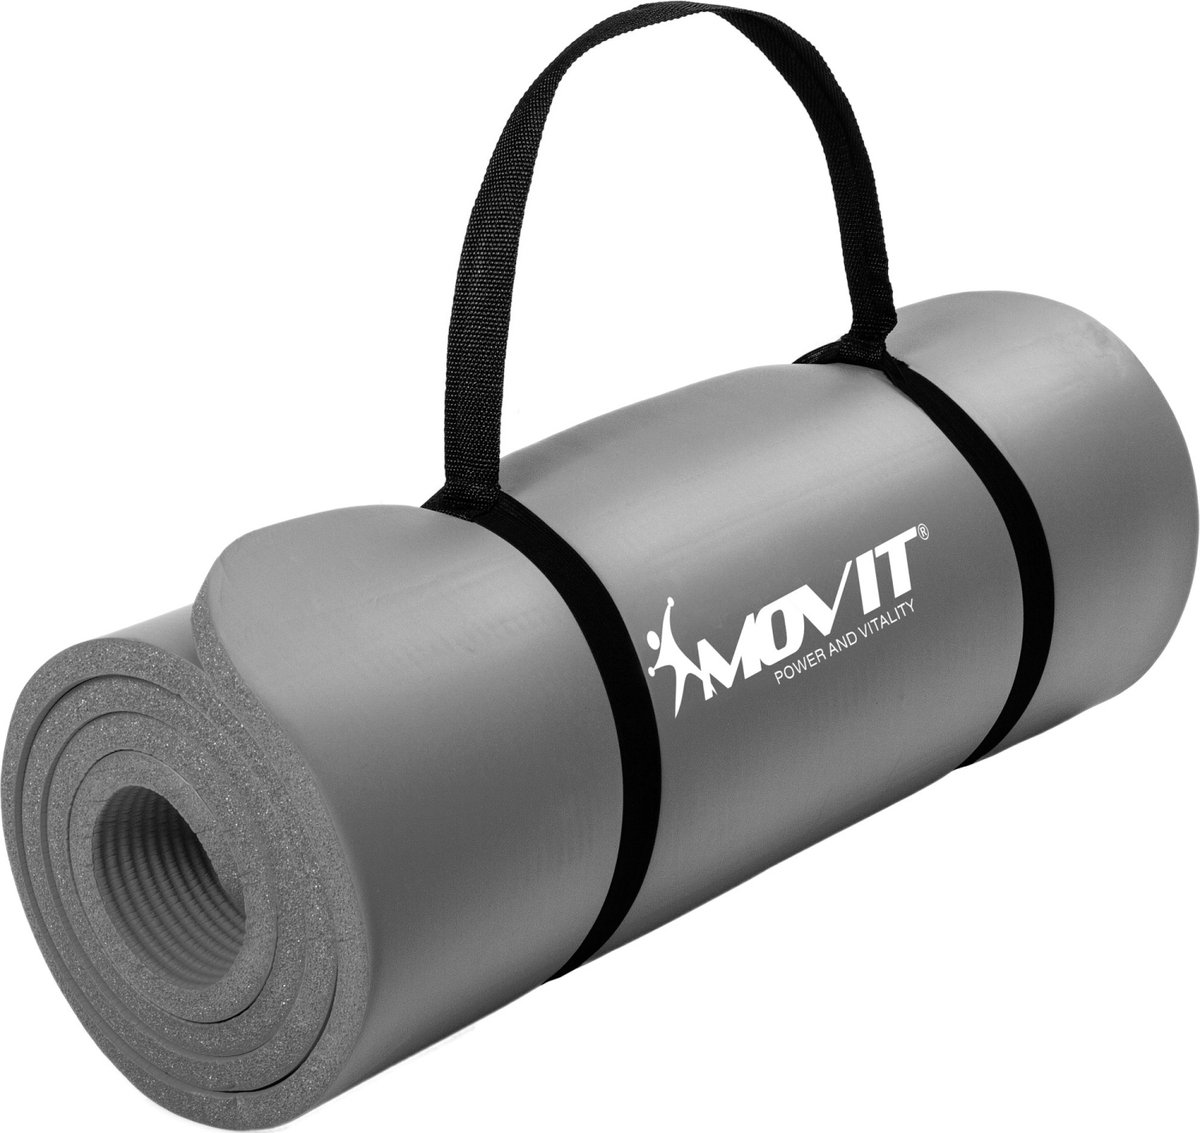 Yoga mat - Yogamat - Fitness mat - Sport mat - Fitness matje - Pilates mat - Oprolbaar - Inclusief handgreep - 183 x 60 x 1 cm - Grijs